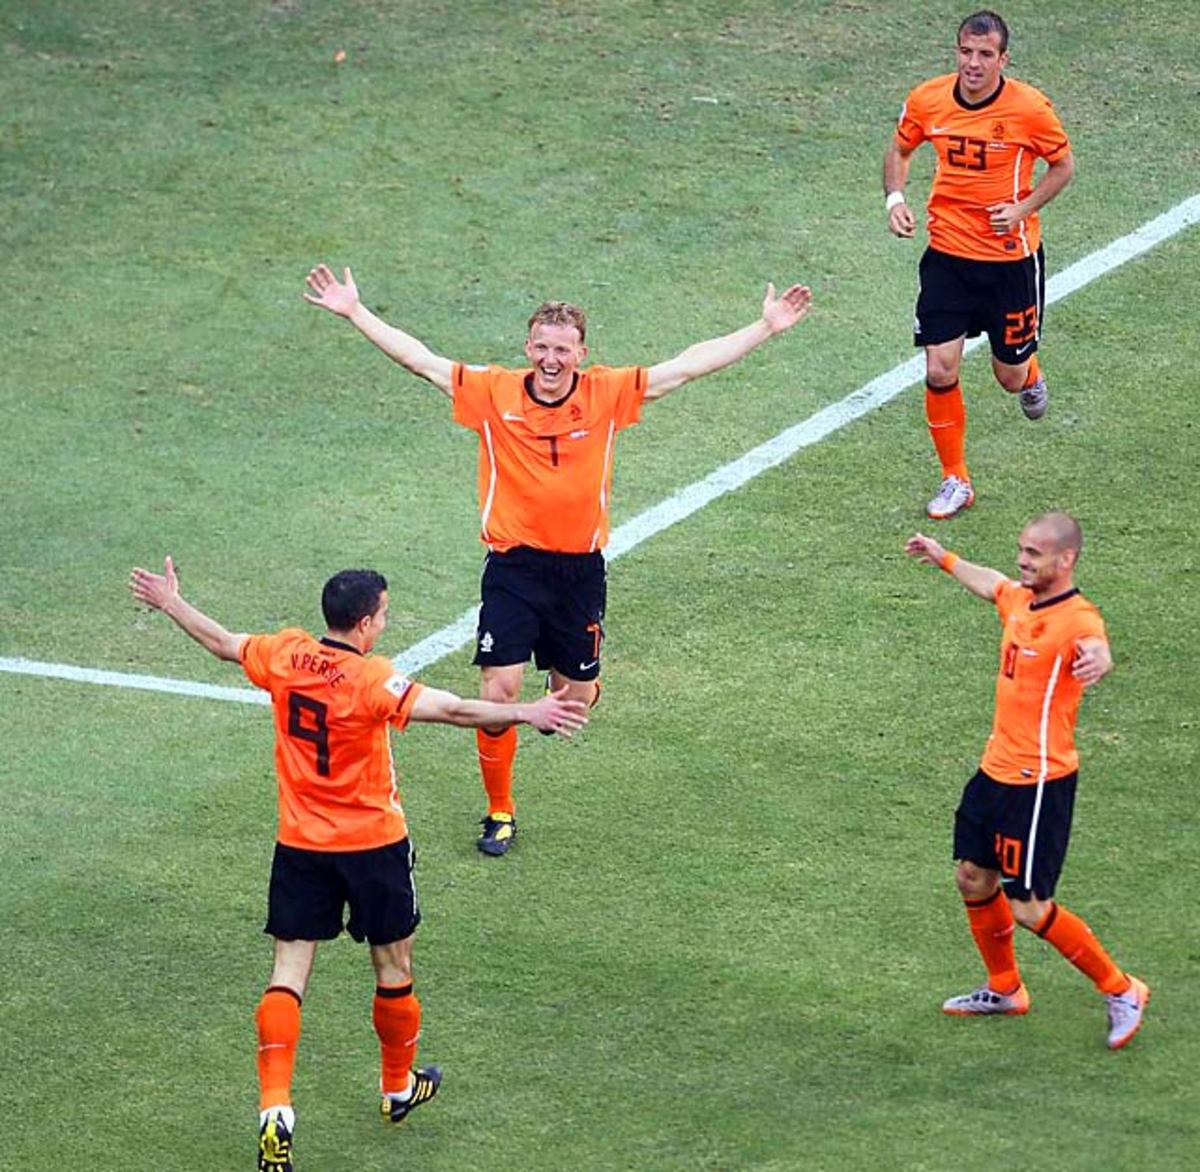 Netherlands 2, Denmark 0